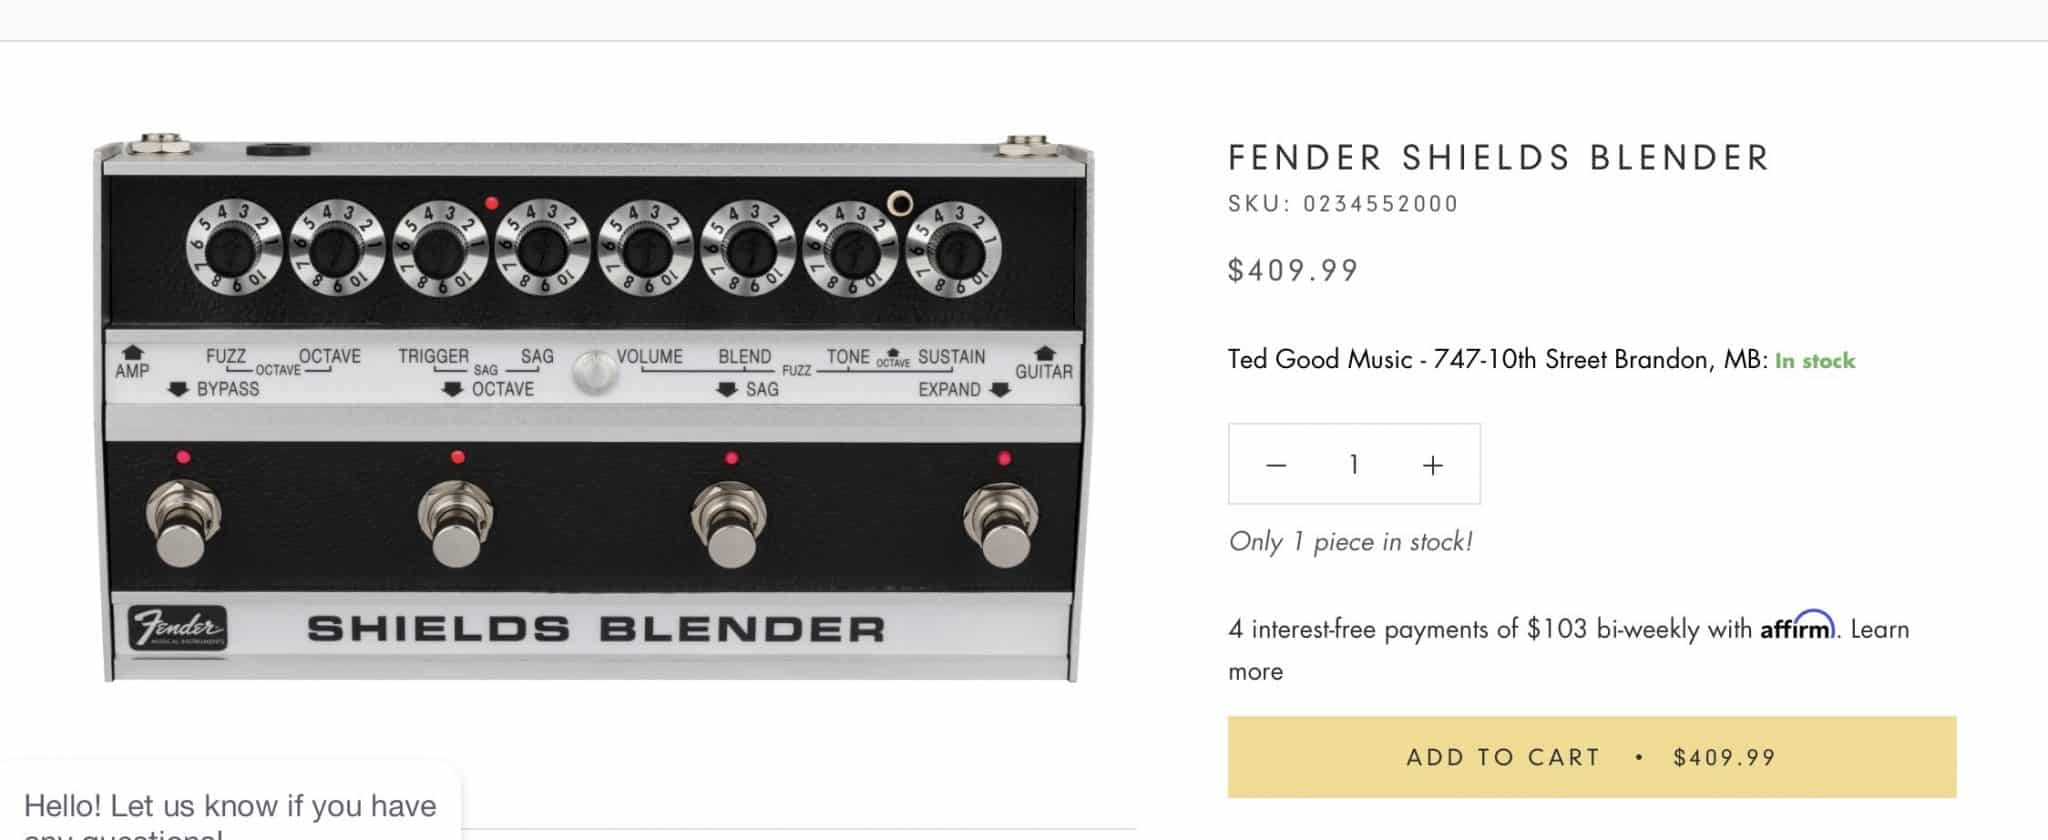 Standard Fender Shields Blender